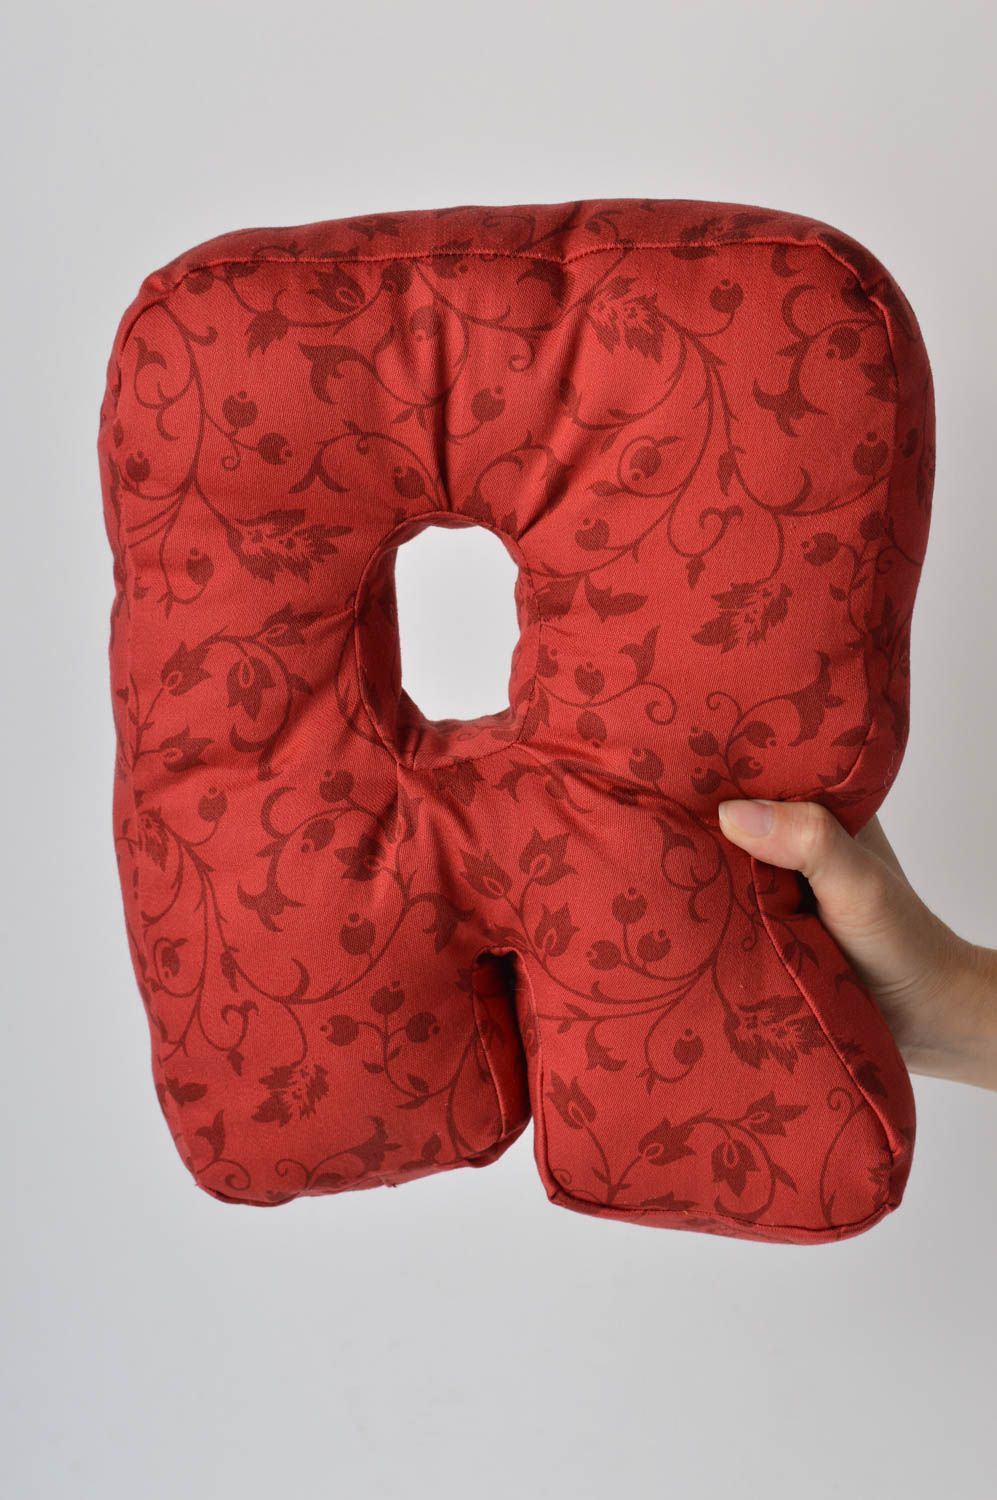 Декоративная подушка ручной работы подушка-буква из жаккарда мягкая буква R фото 1